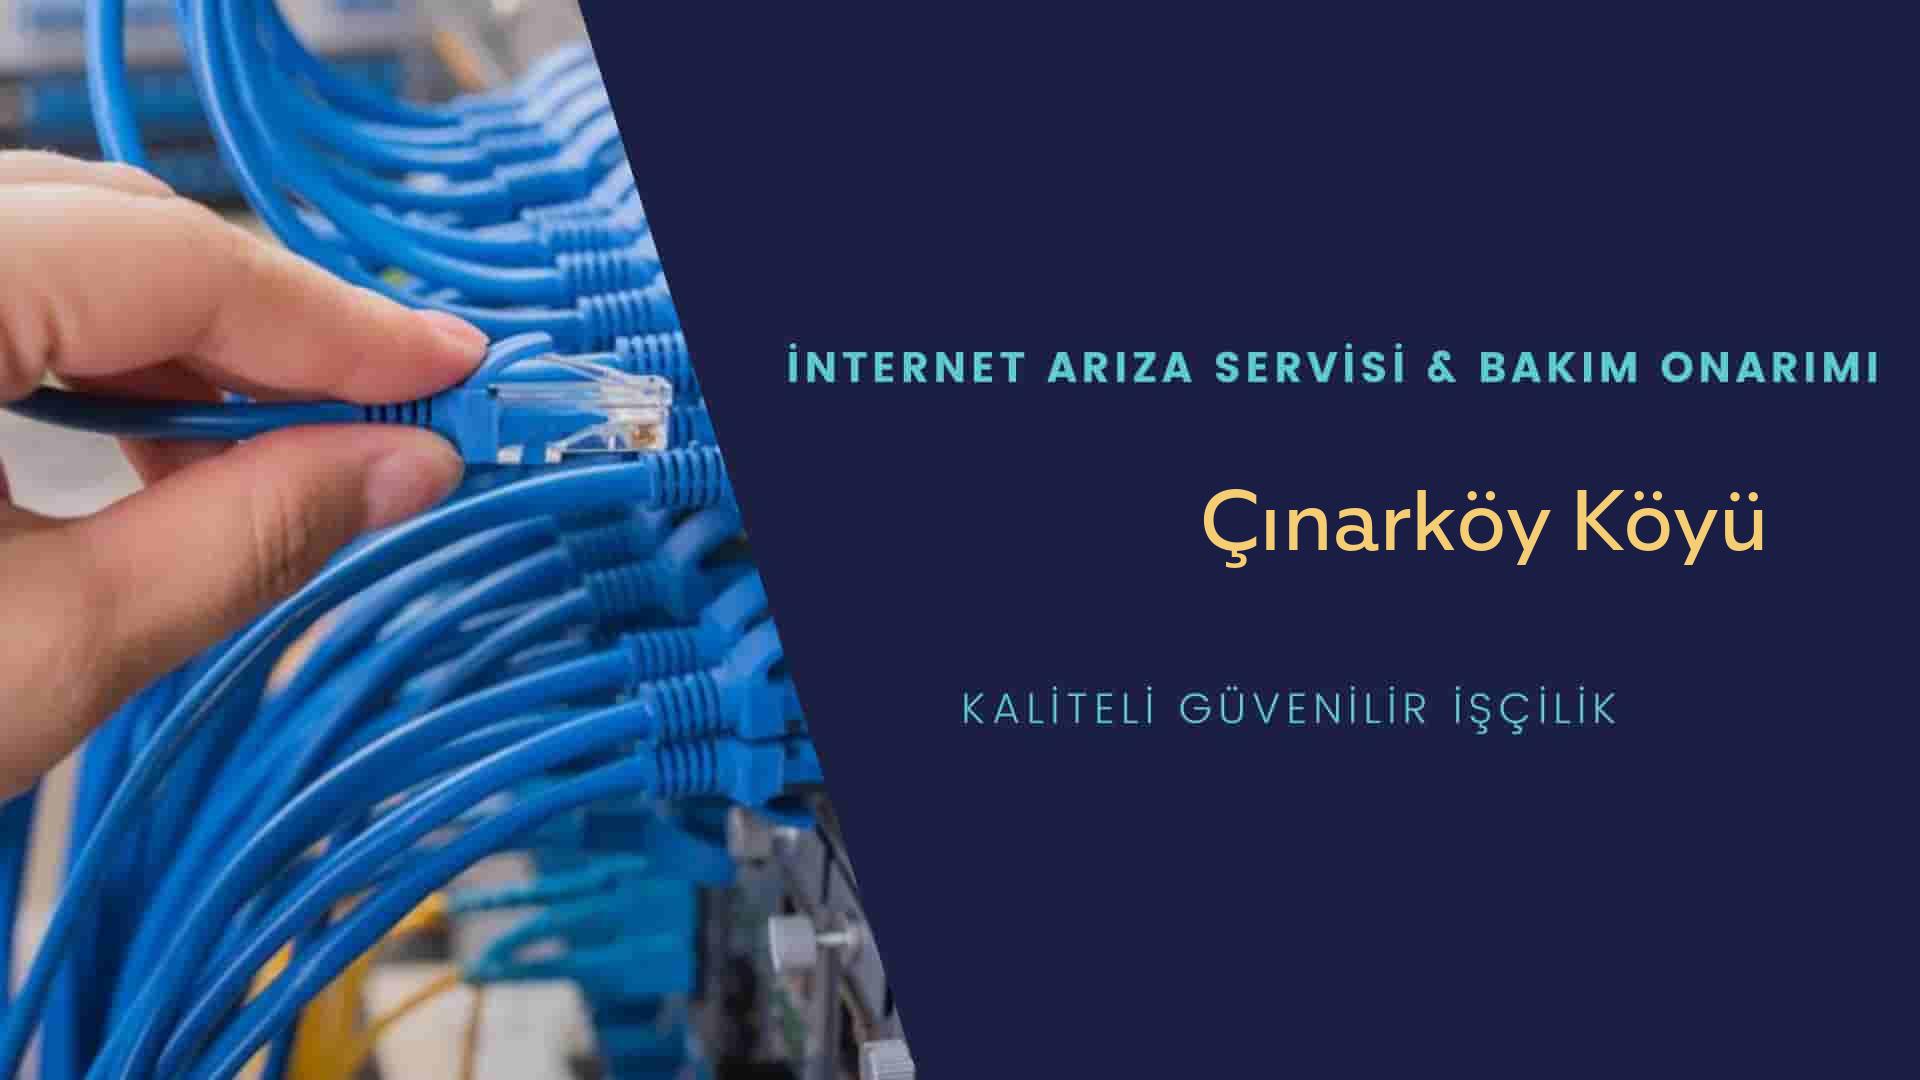 Çınarköy Köyü internet kablosu çekimi yapan yerler veya elektrikçiler mi? arıyorsunuz doğru yerdesiniz o zaman sizlere 7/24 yardımcı olacak profesyonel ustalarımız bir telefon kadar yakındır size.